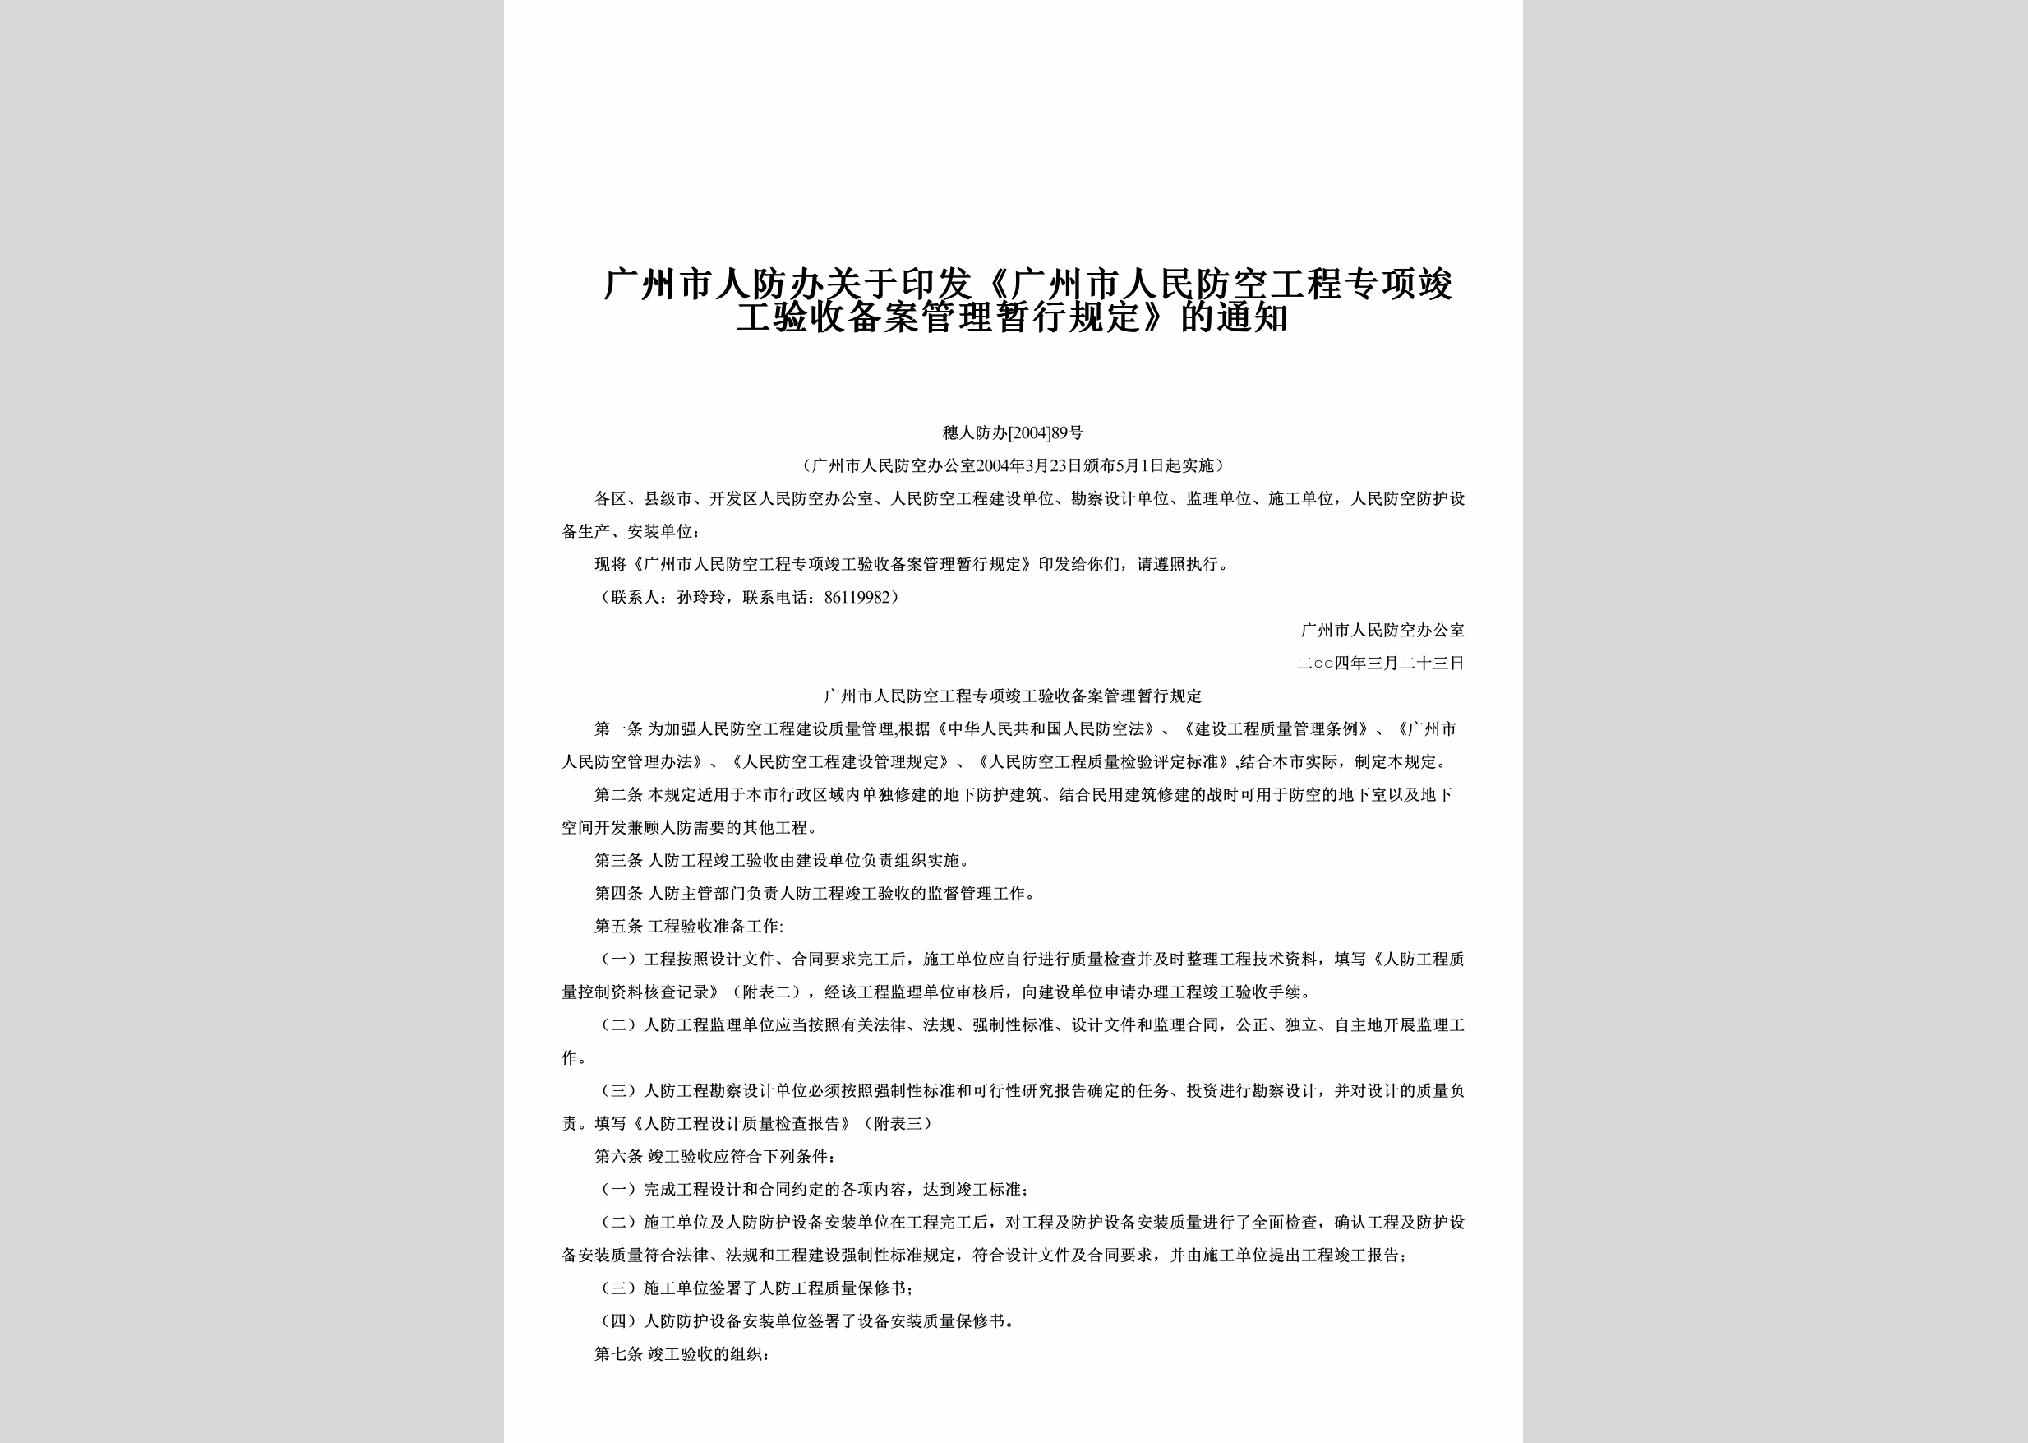 穗人防办[2004]89号：关于印发《广州市人民防空工程专项竣工验收备案管理暂行规定》的通知